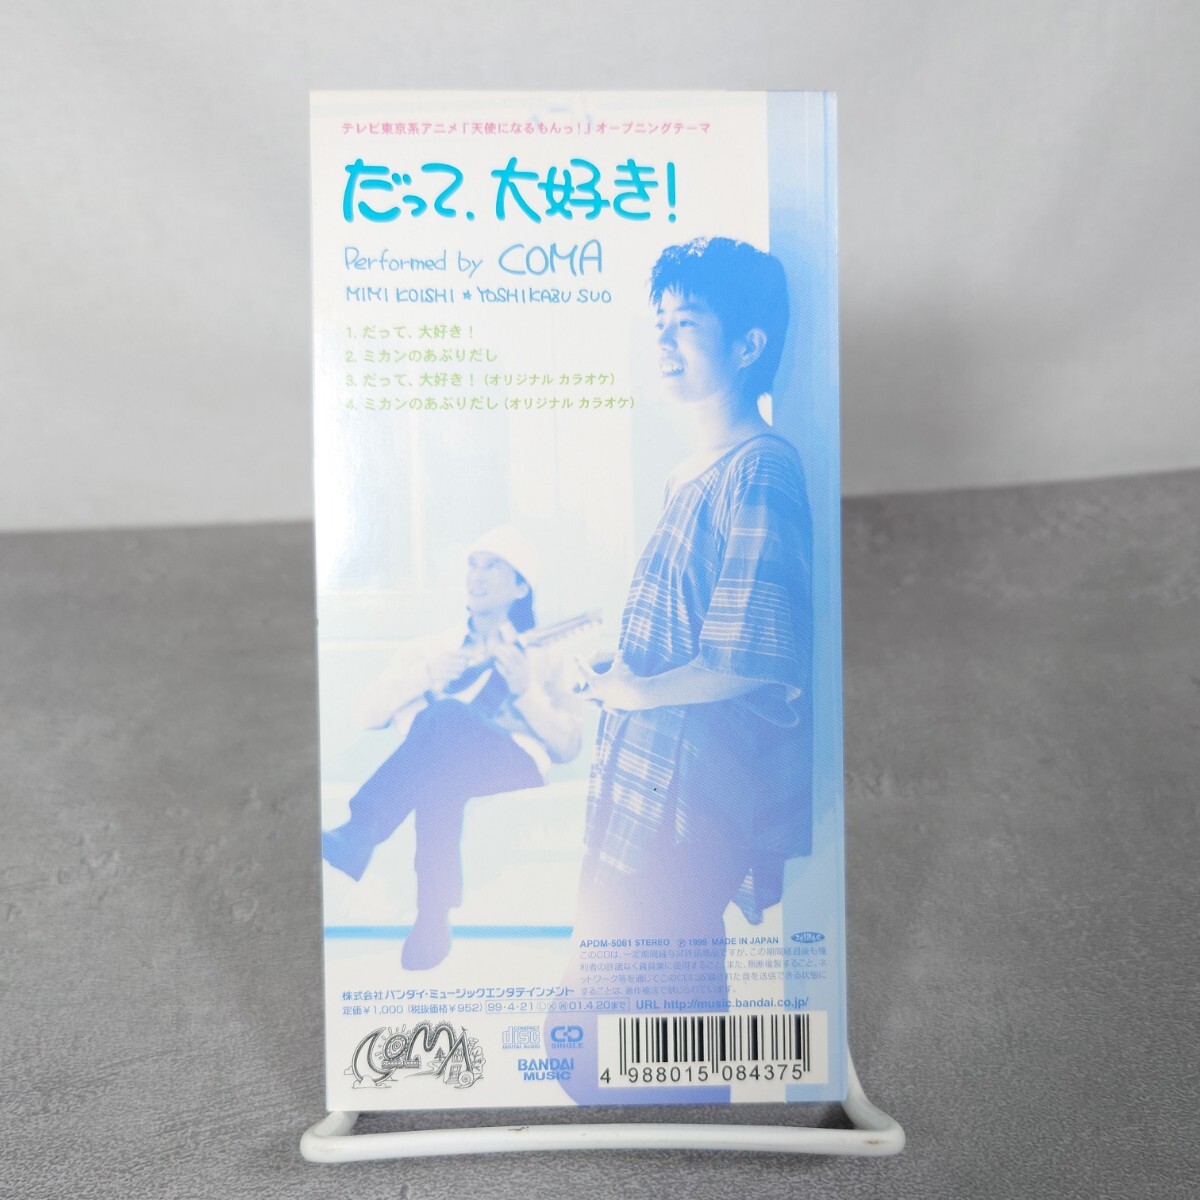 【廃盤】COMA だって 大好き! TVアニメ「天使になるもんっ!」主題歌 オープニングテーマ 8cm シングル CD 8センチ_画像2